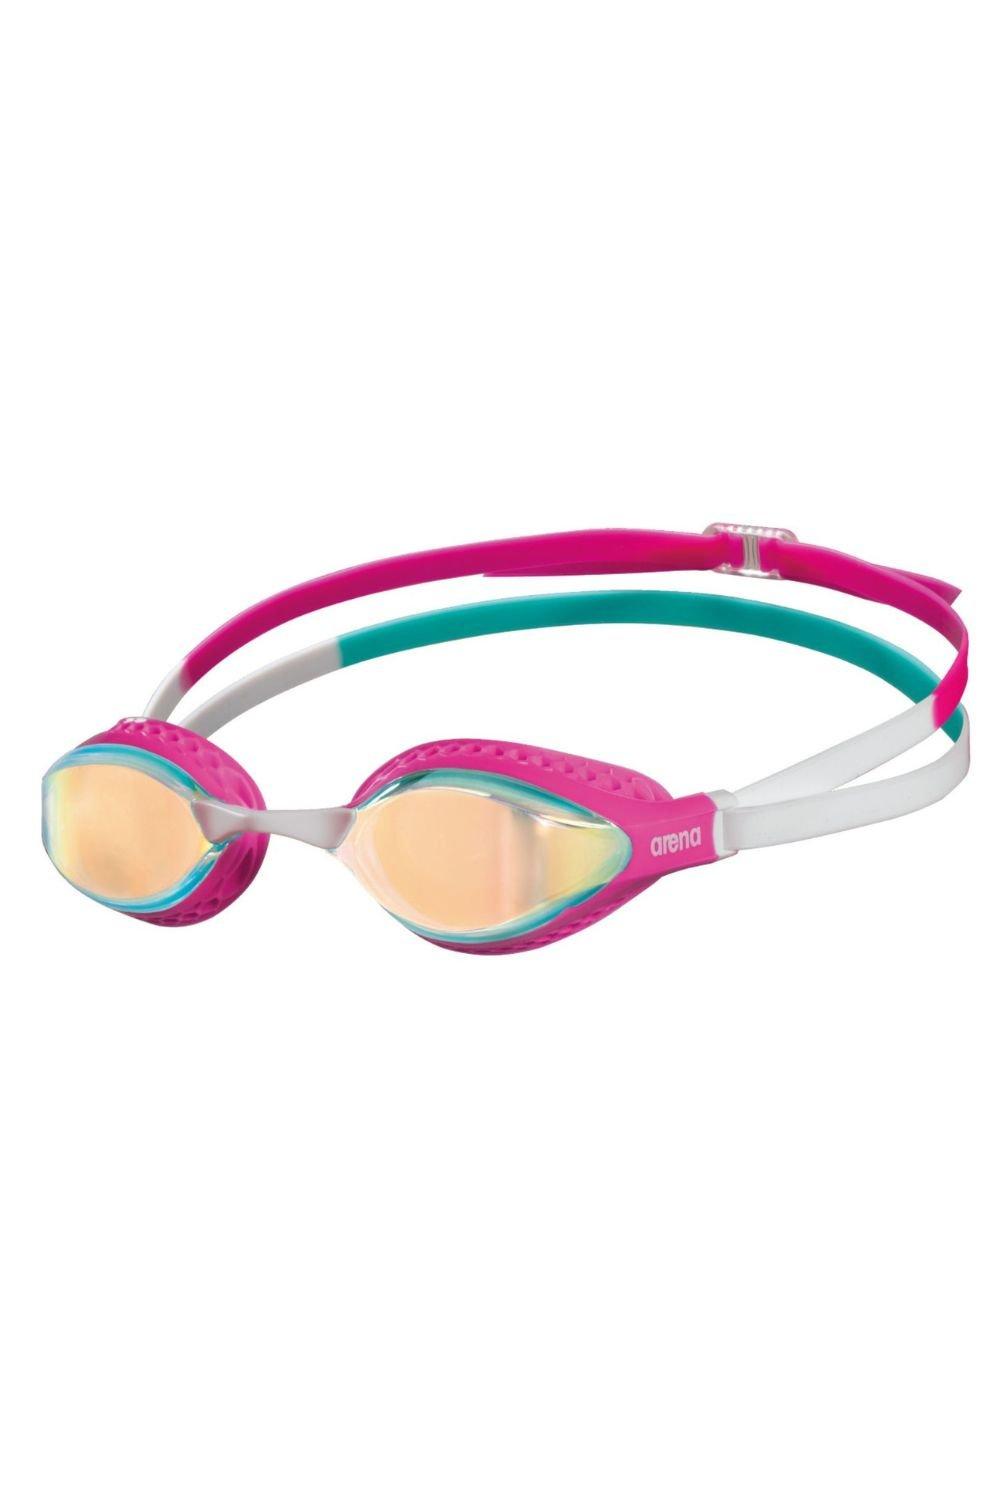 Очки для плавания с зеркалом Airspeed Arena, розовый очки для плавания детские comet mirror